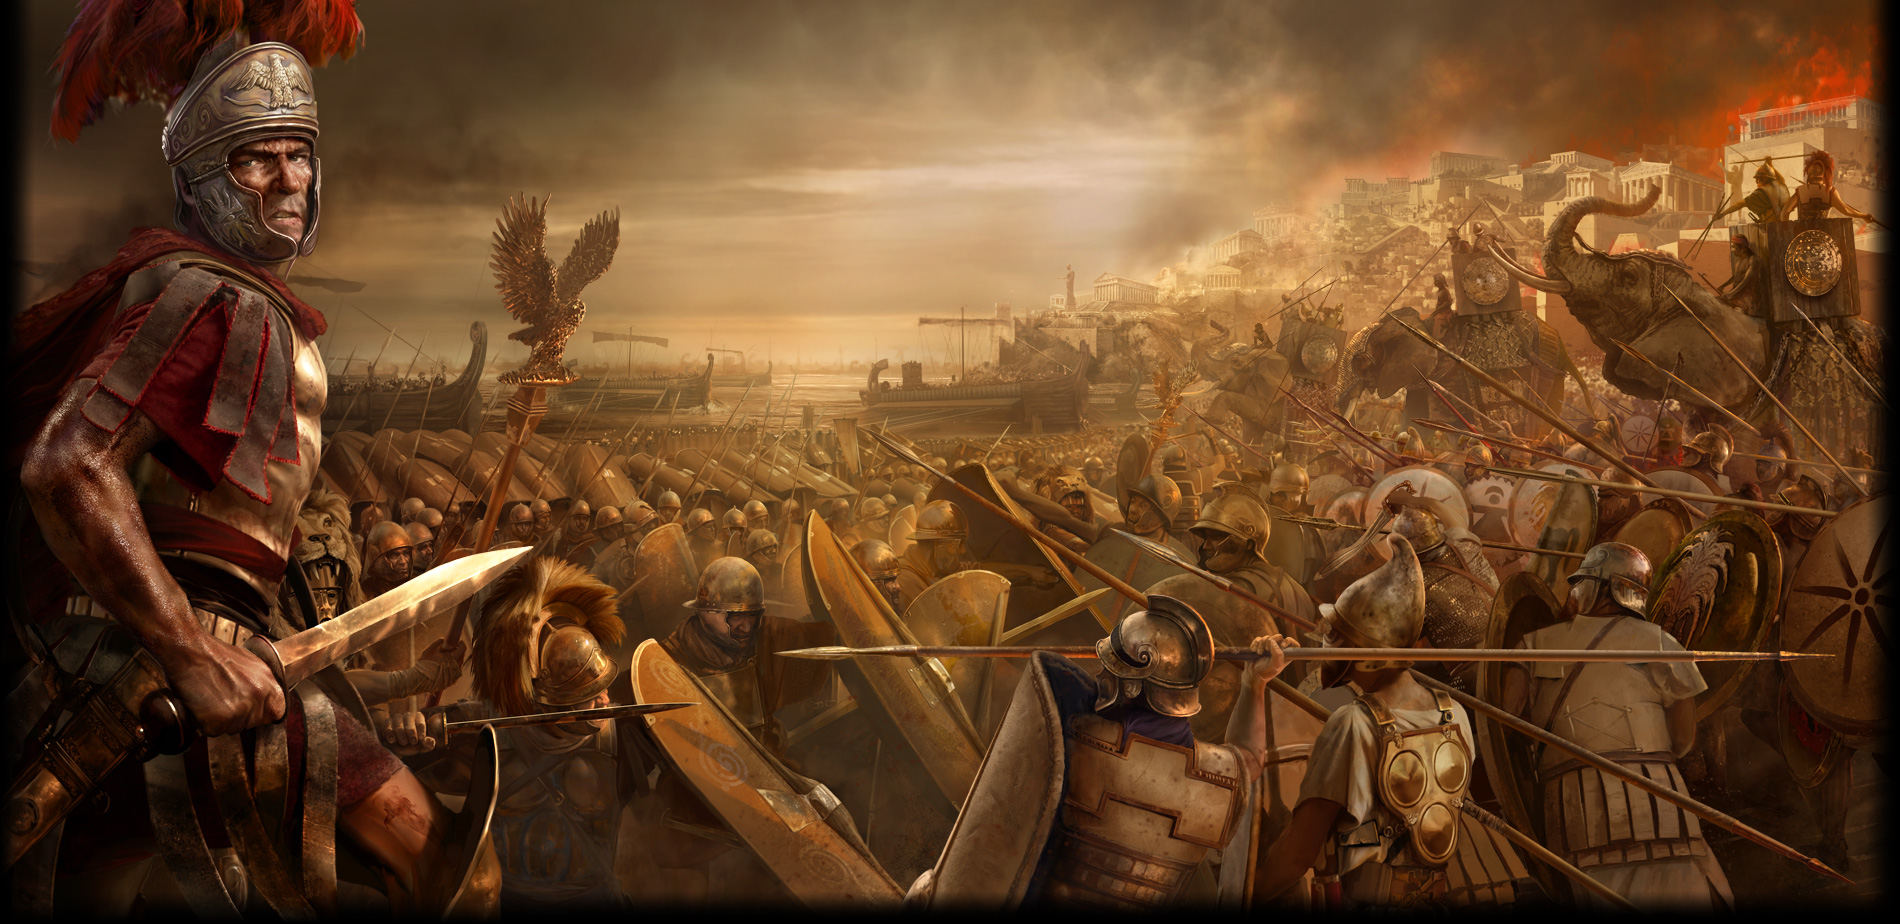 römischer soldat tapete,action adventure spiel,computerspiel,mythologie,cg kunstwerk,spiele